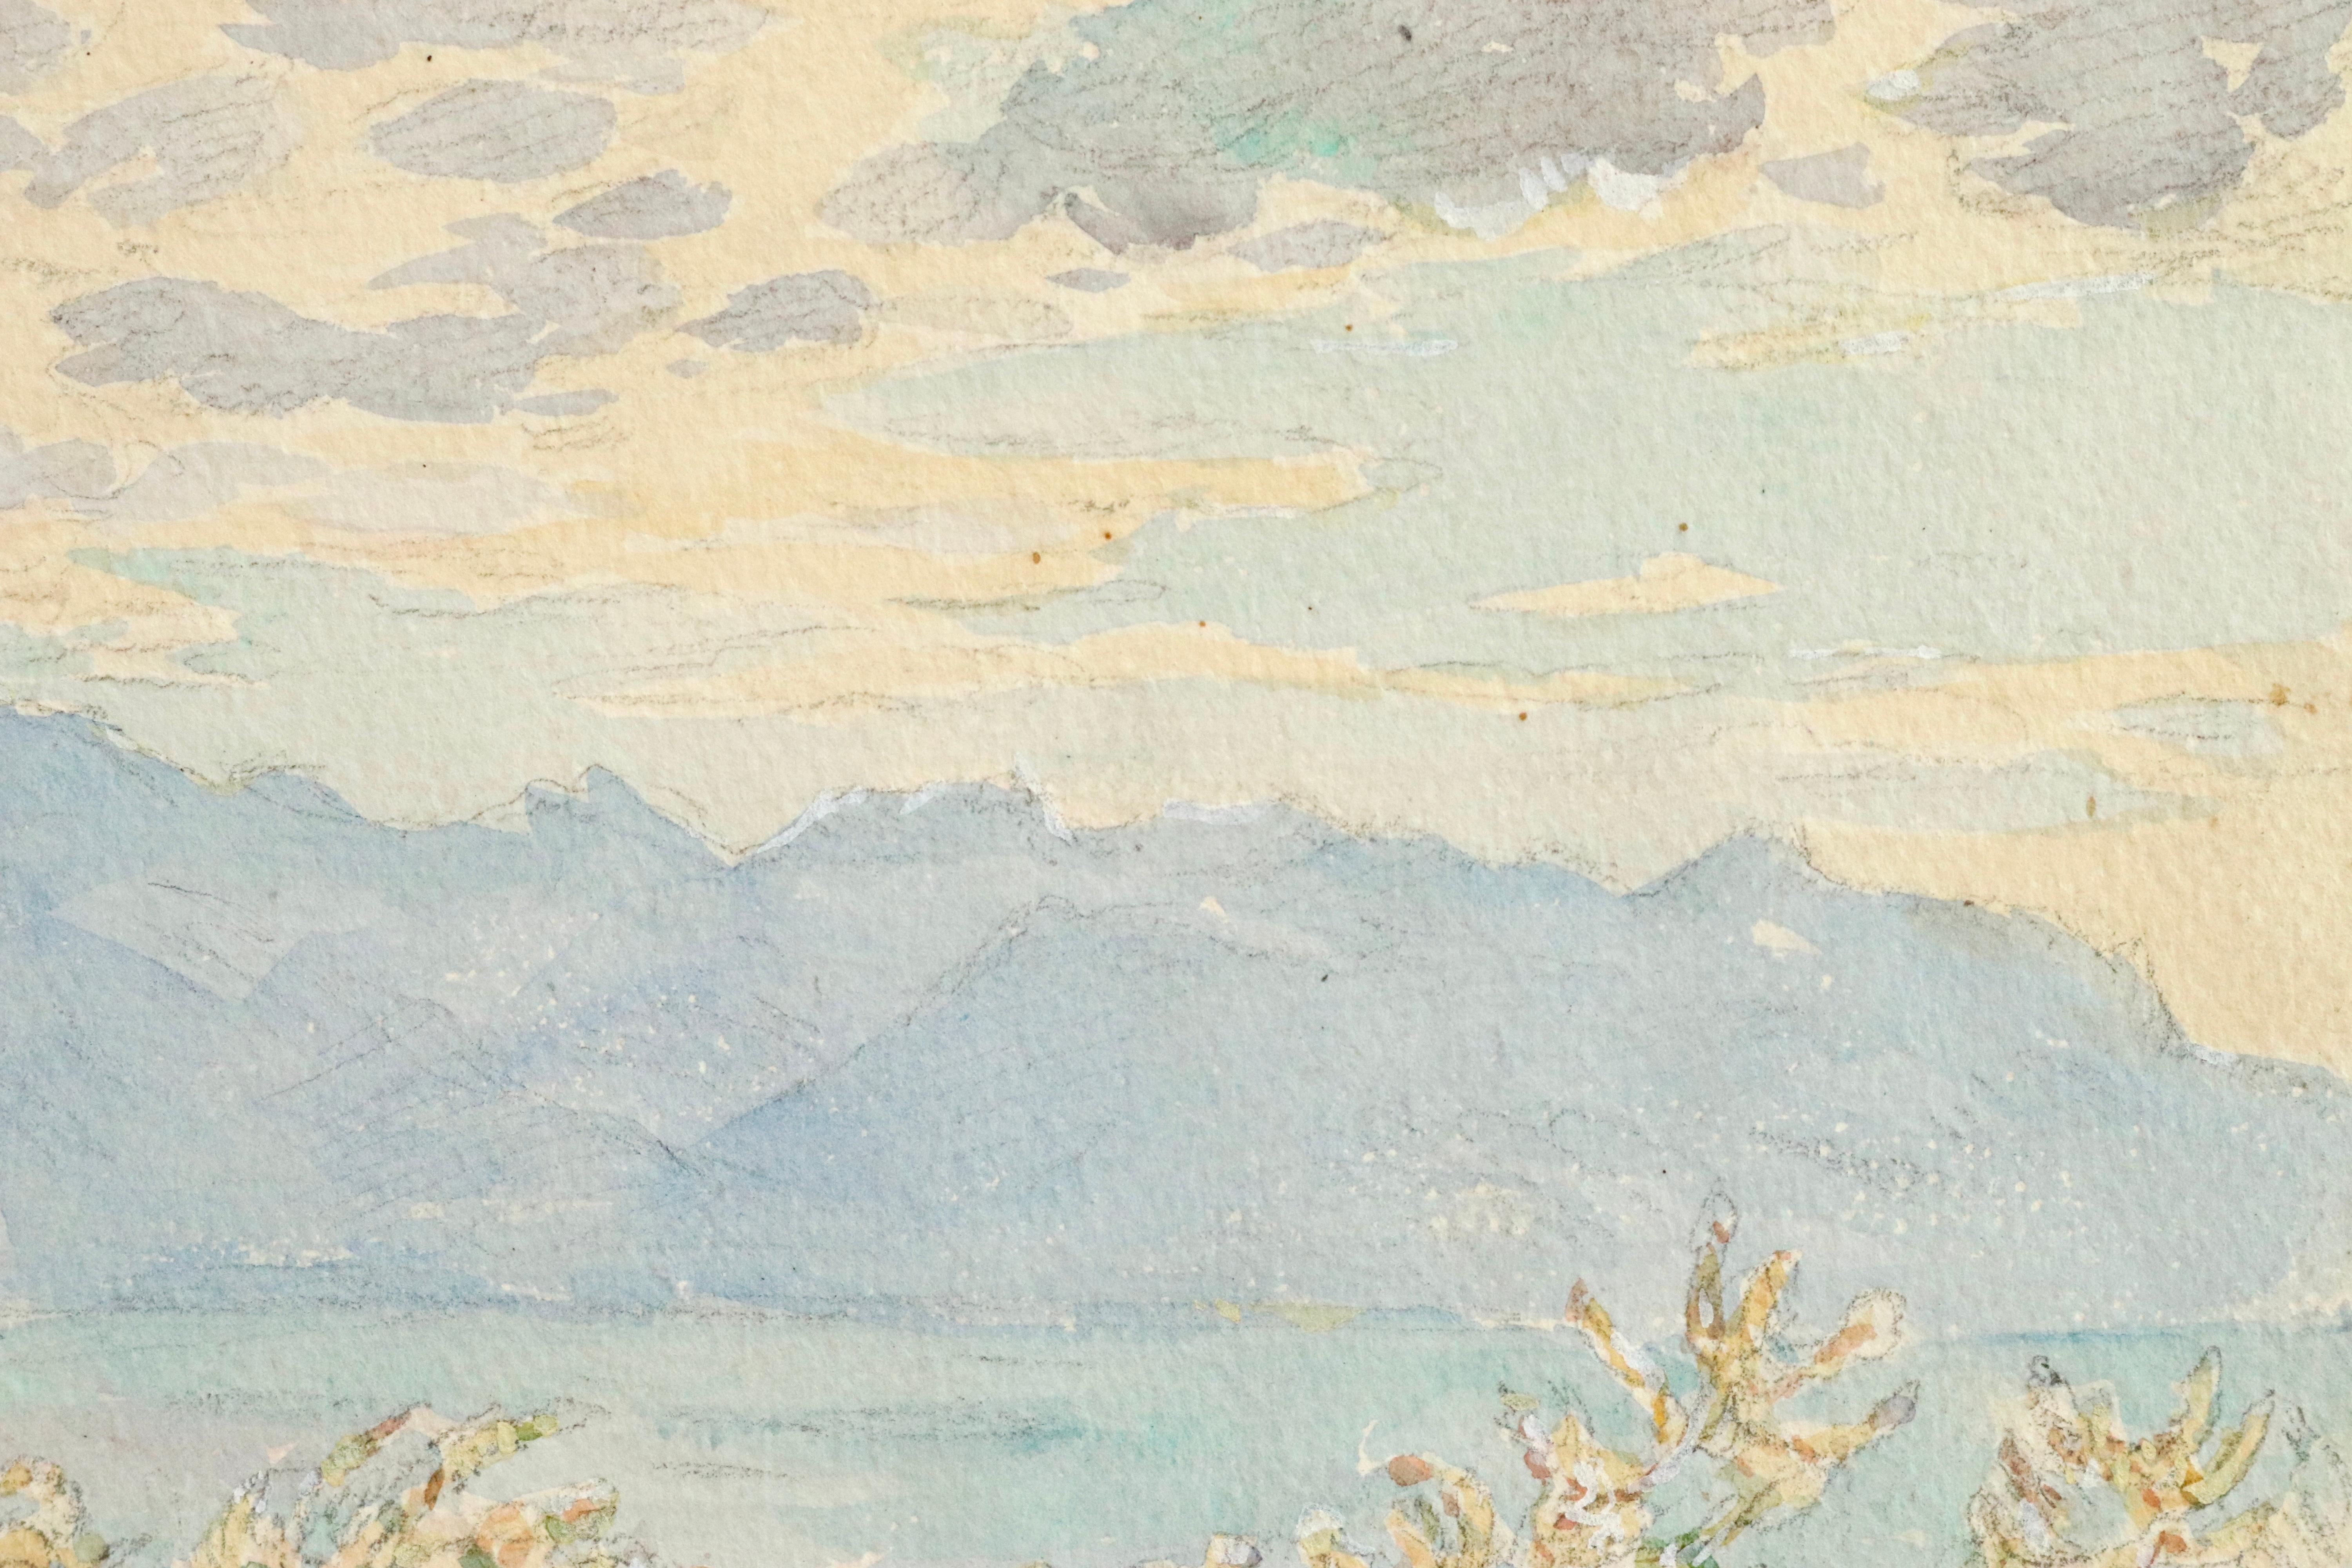 La Vue - Lac Geneva -Impressionist Watercolor, Mountain & Lake Landscape H Duhem - Art by Henri Duhem